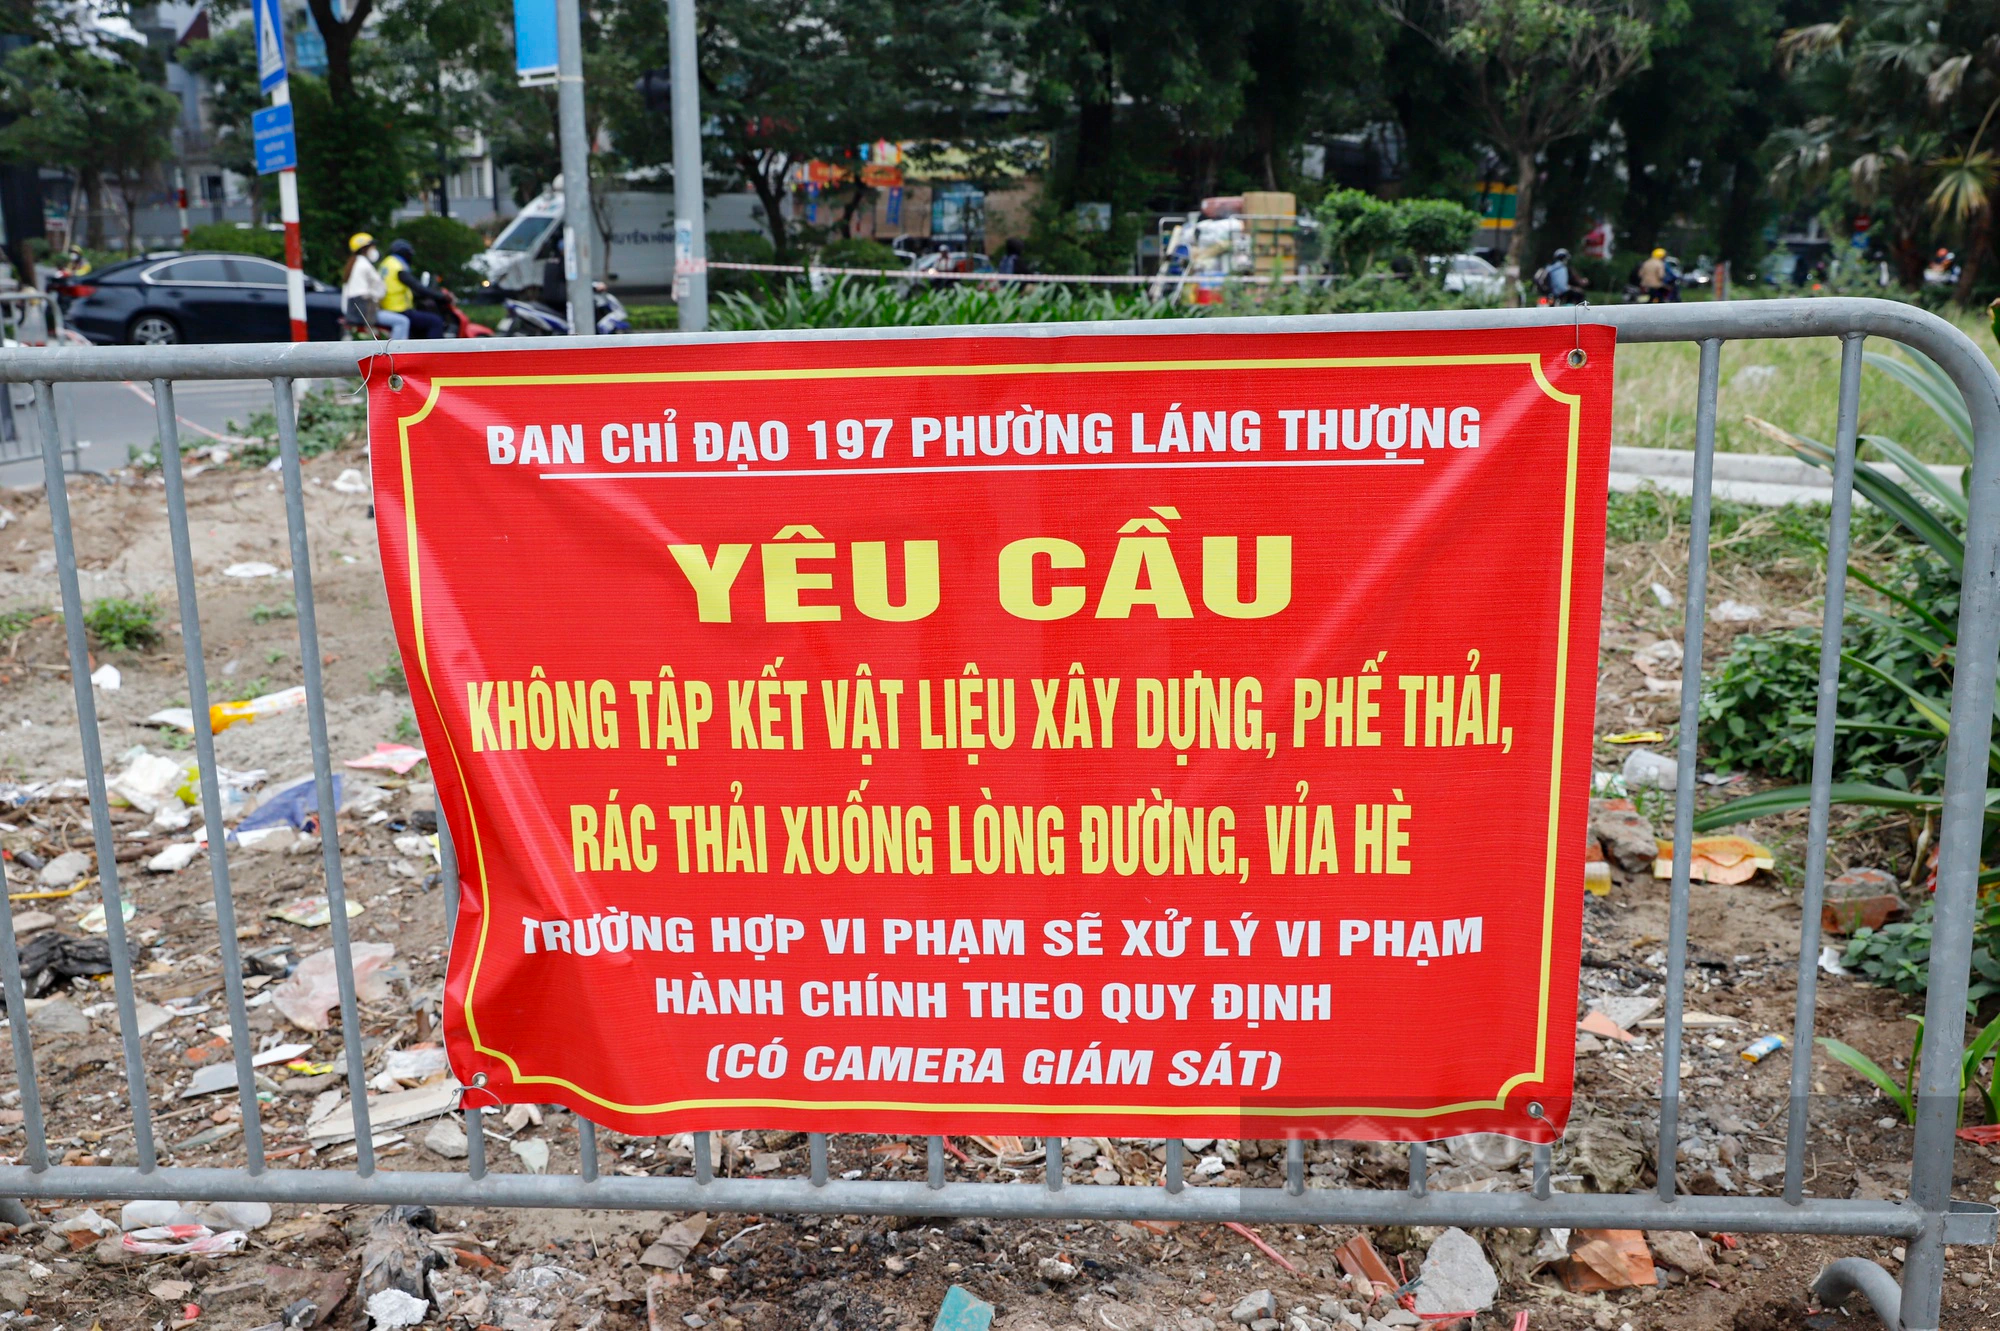 Hiện trạng 2 tuyến đường vừa được Hà Nội đề xuất dành riêng cho xe đạp - Ảnh 4.